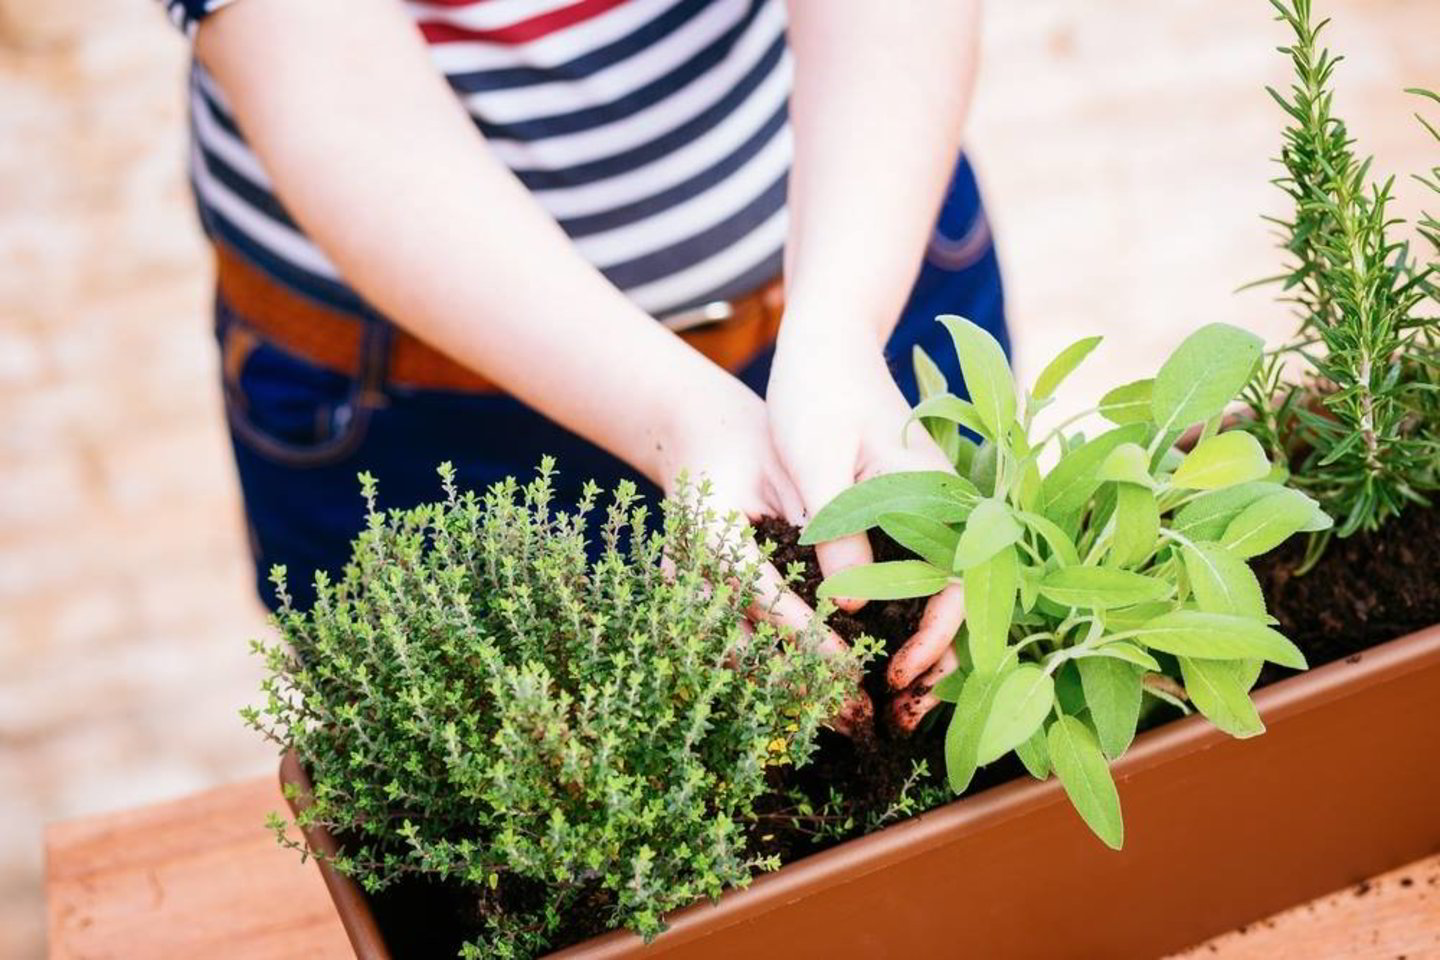  Namuose susiruošus auginti daržoves ar prieskonius, reikėtų pasirūpinti sėklomis ar daigais, substratu, drenažu, loveliais, vazonais ir trąšomis.<br> Shutterstock nuotr.